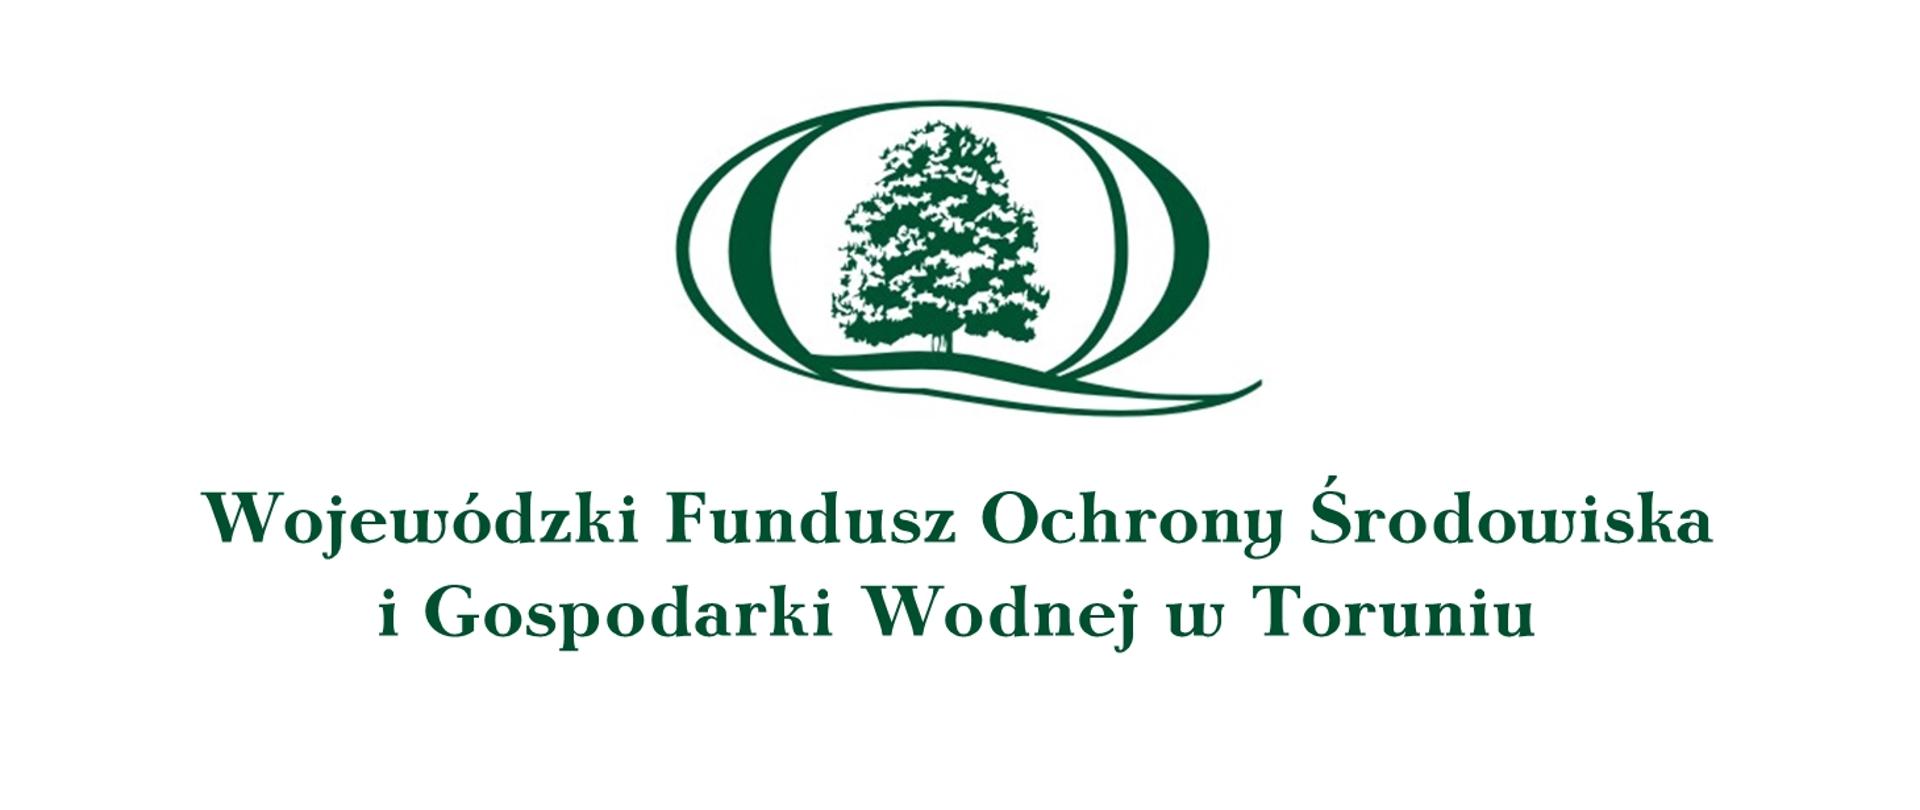 Wojewódzki Fundusz Ochrony Środowiska i Gospodarki Wodnej w Toruniu - logotyp